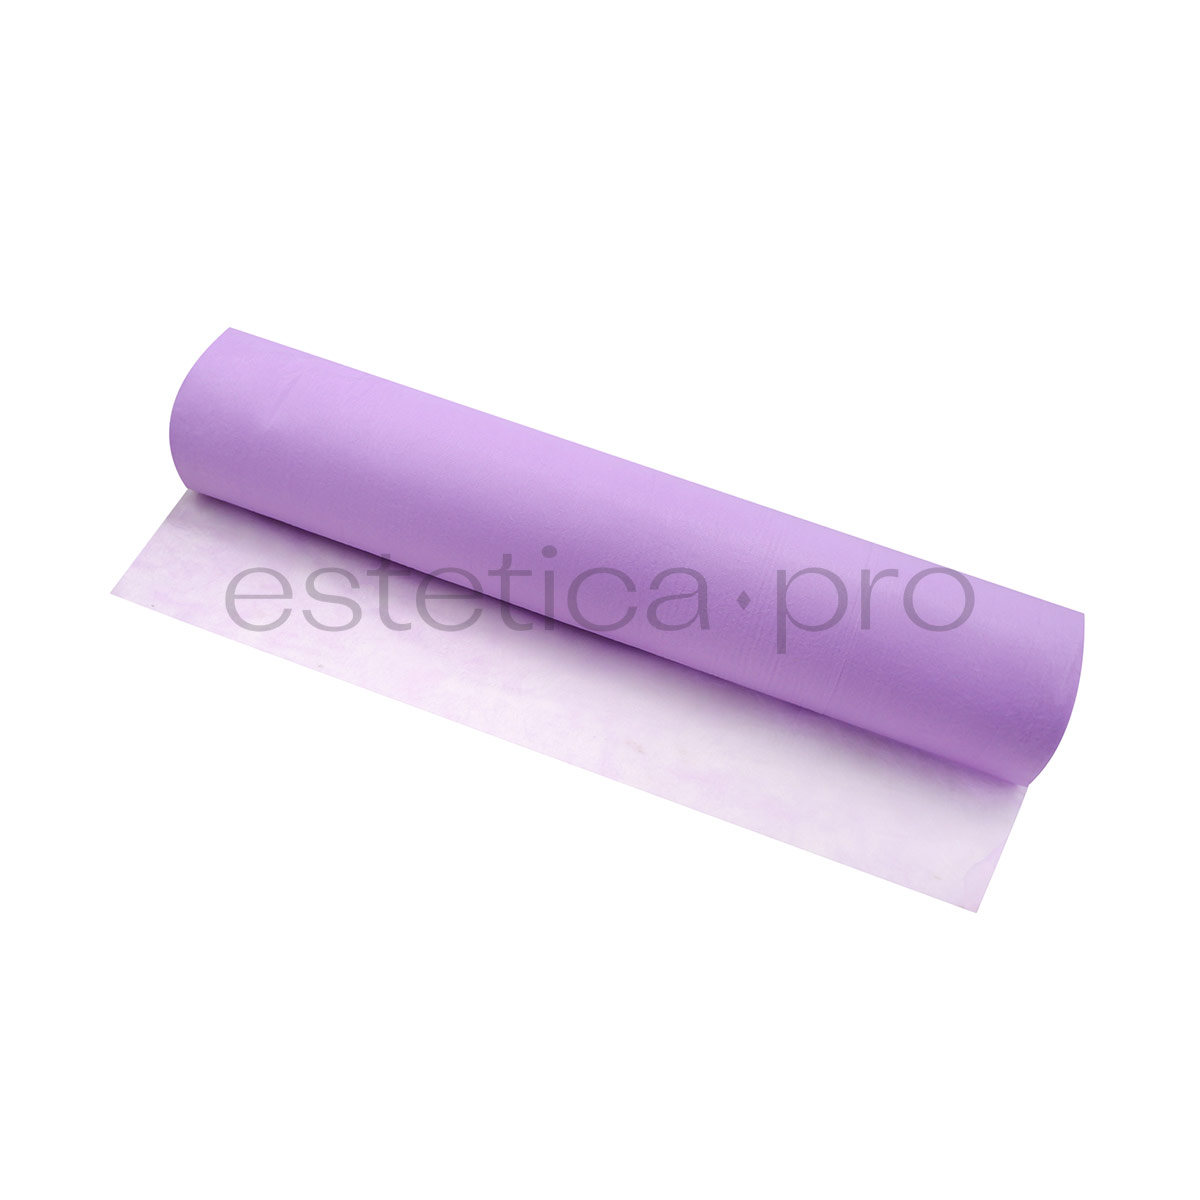 Простынь одноразовая 70*200,SMS 15 гр/м,100 штук (рулон), цвет фиолетовый